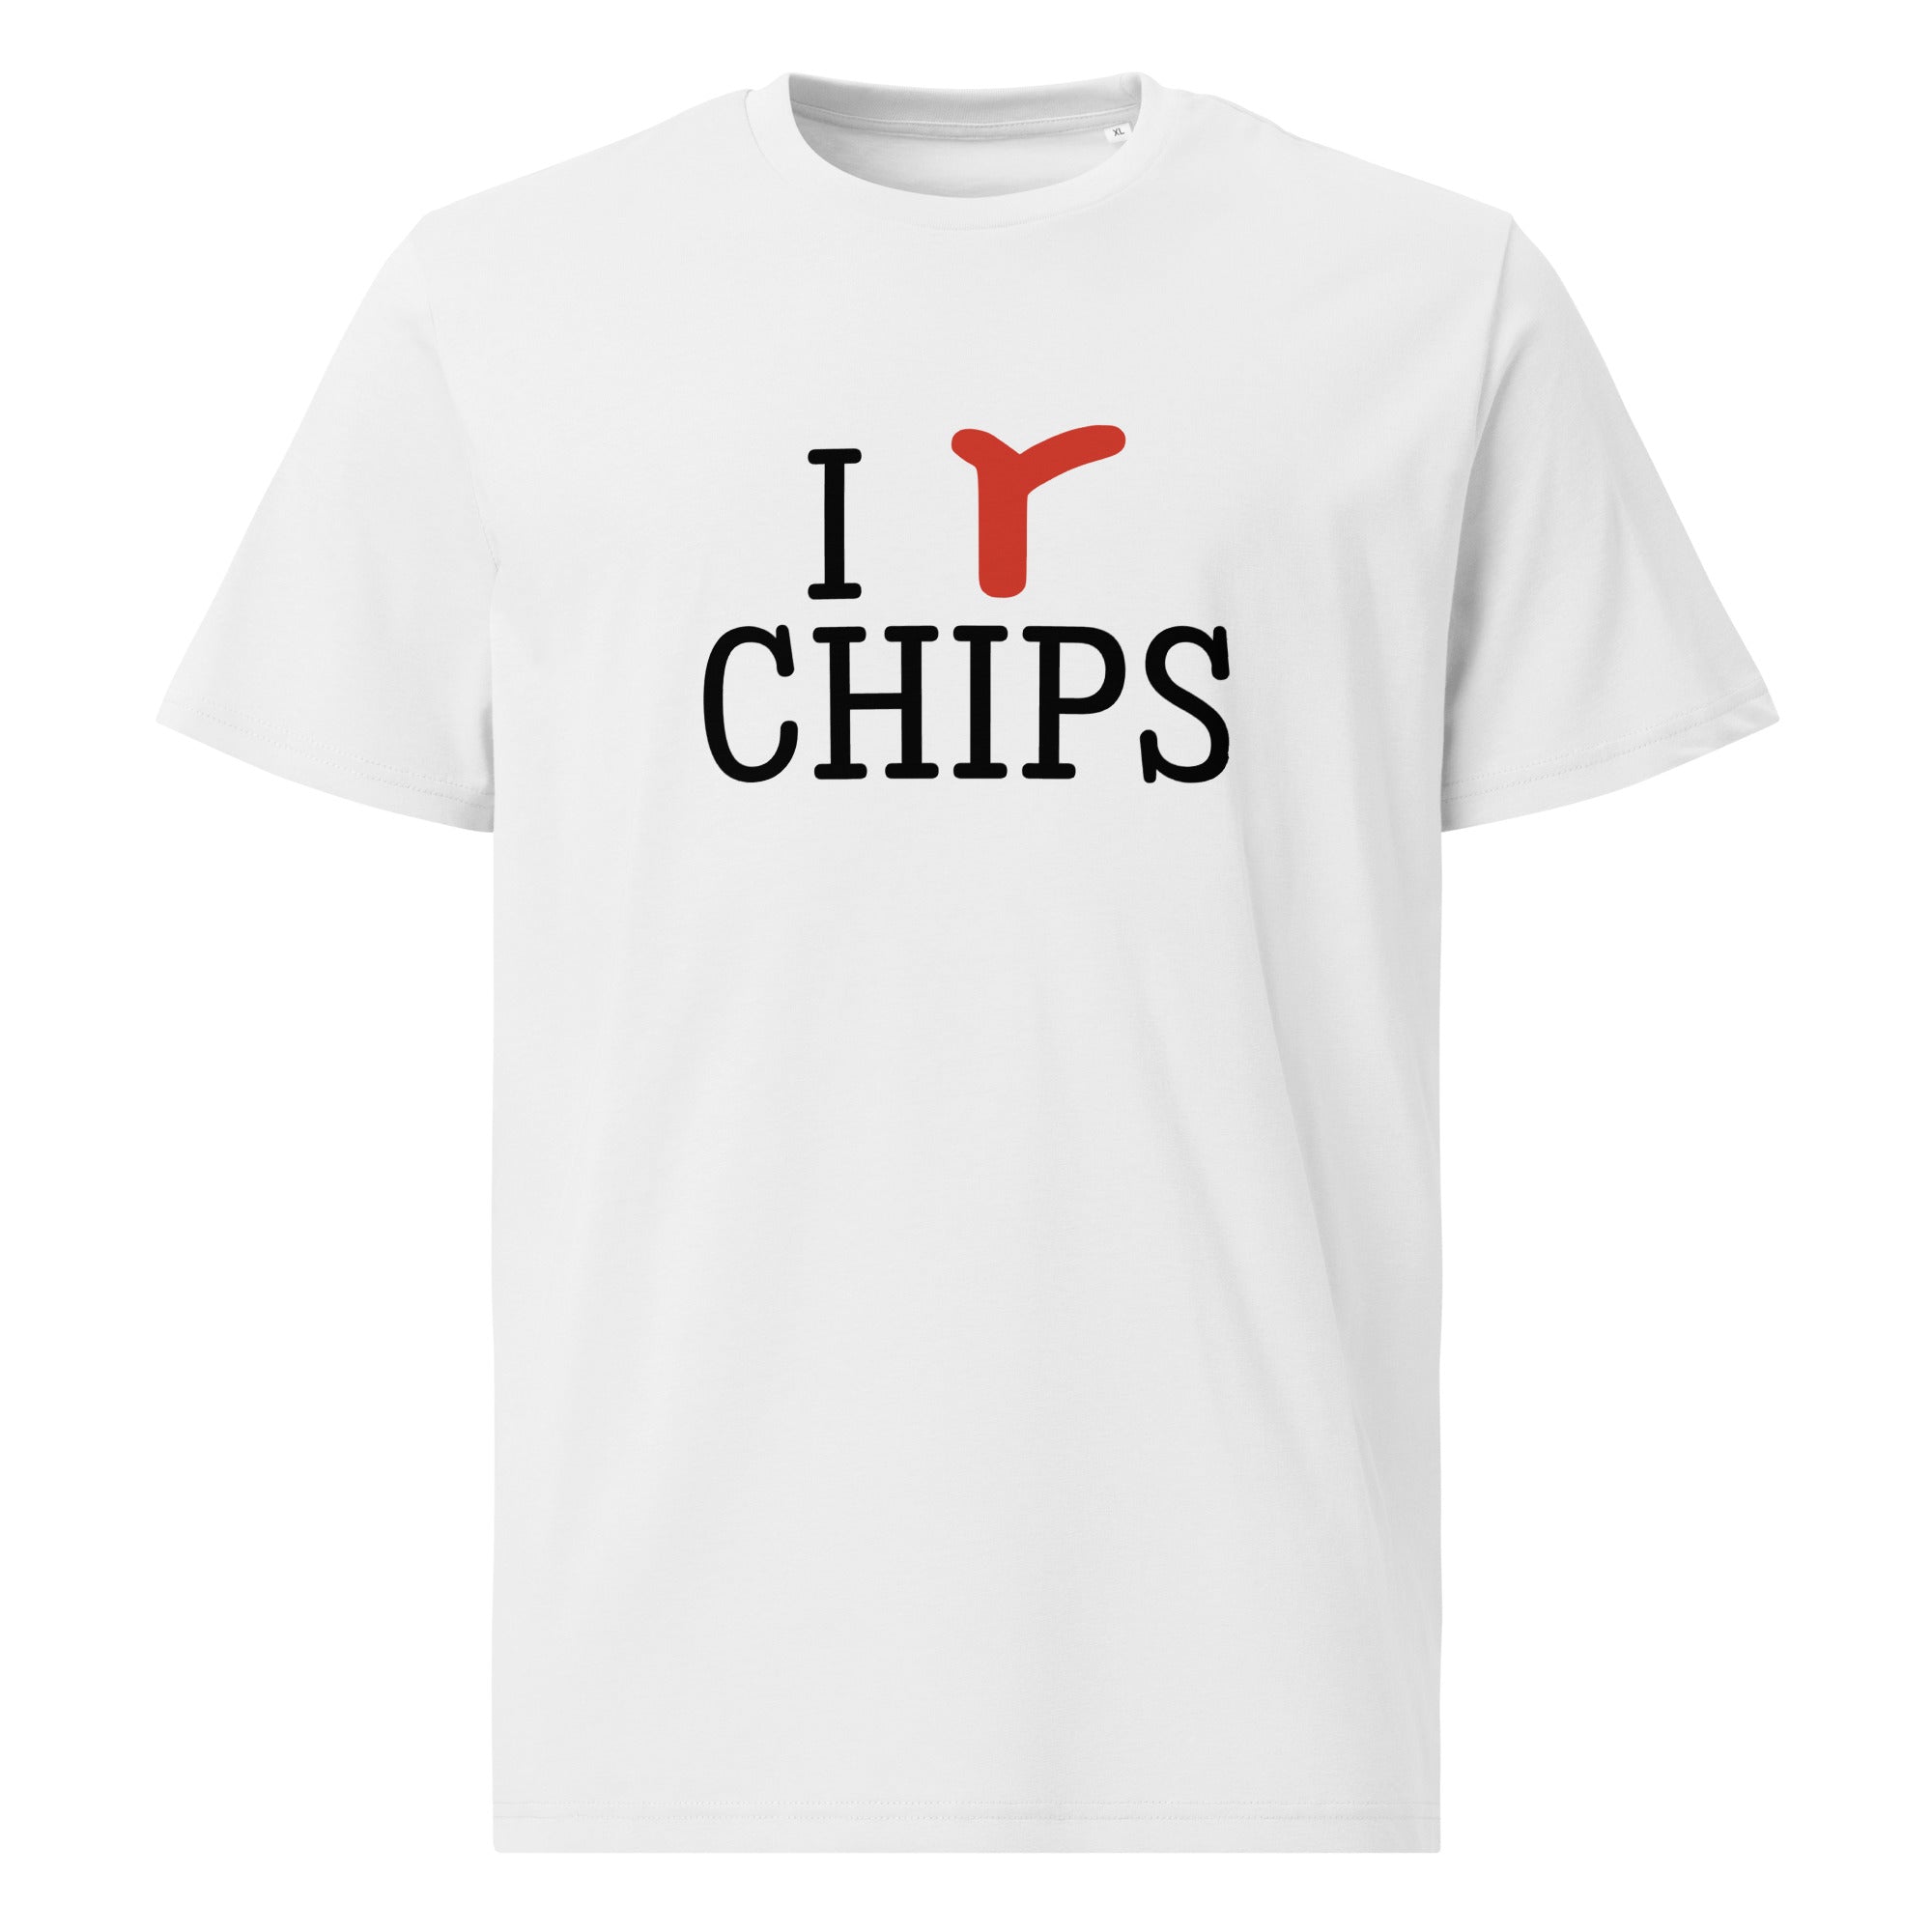 I Love Chips Tee - White